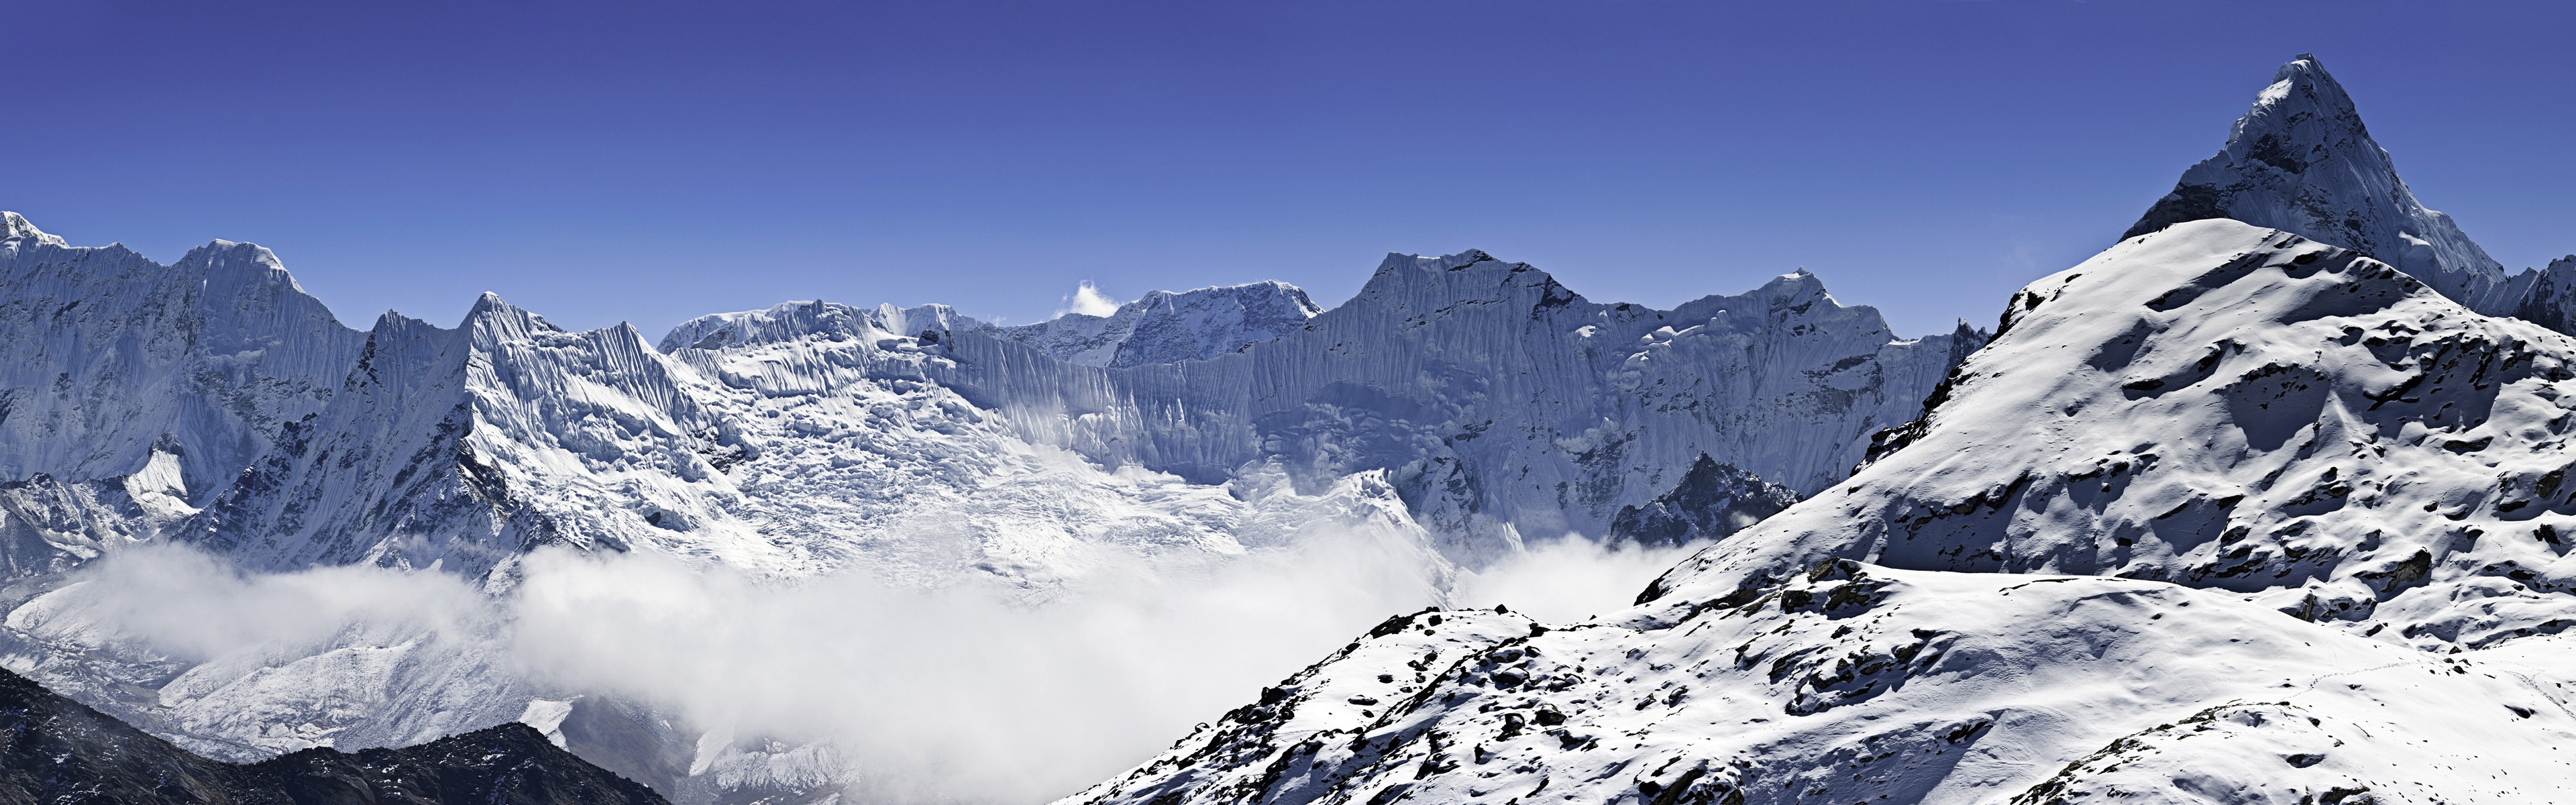 Windows 8 offiziellen Panorama Tapete, Wellen, Wälder, majestätische Berge #14 - 3840x1200